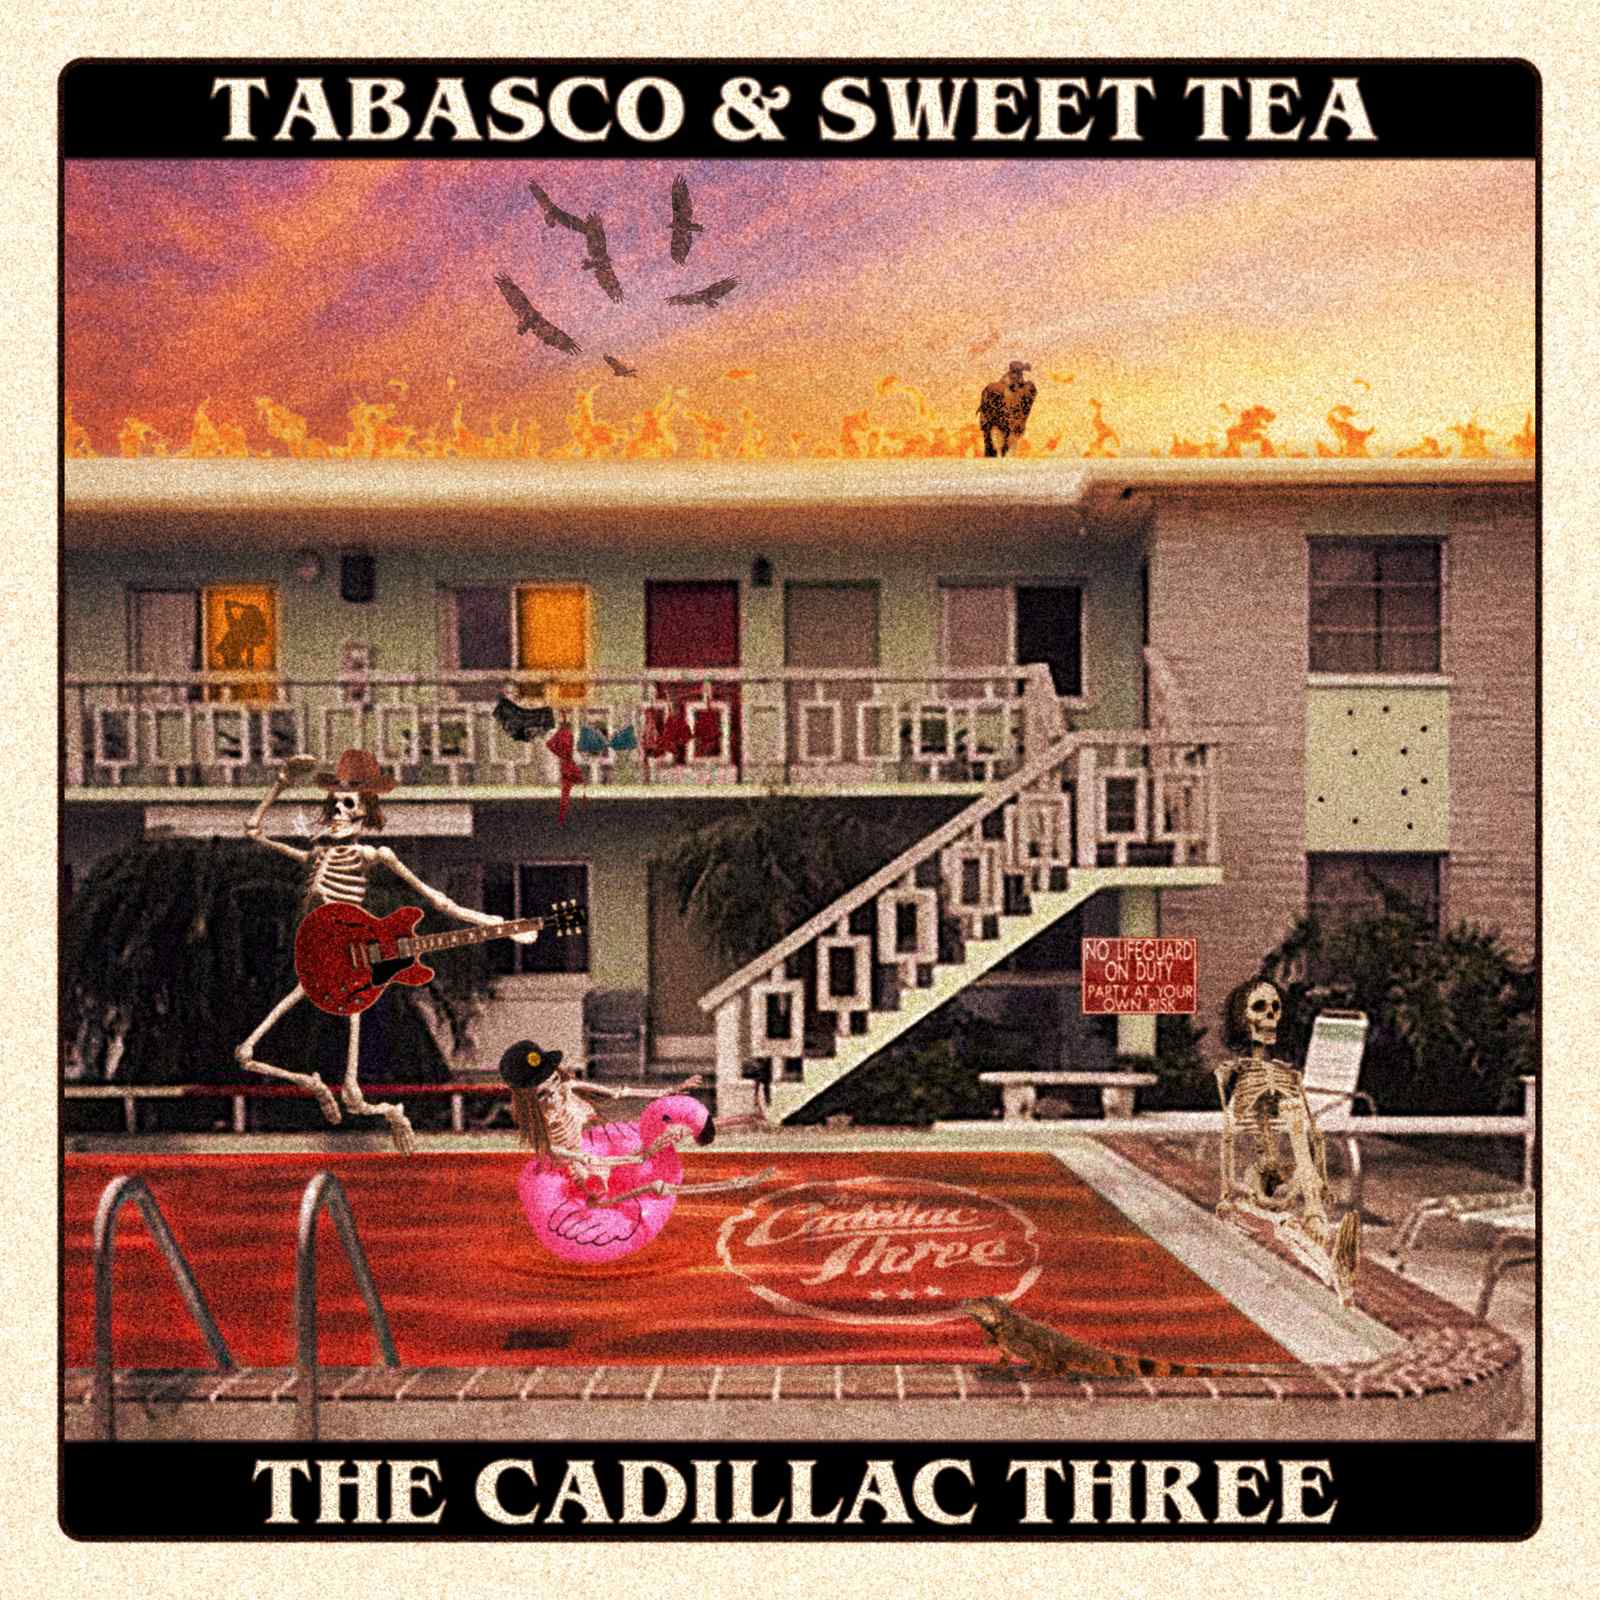 Tabasco & Sweet Tea by The Cadillac Three